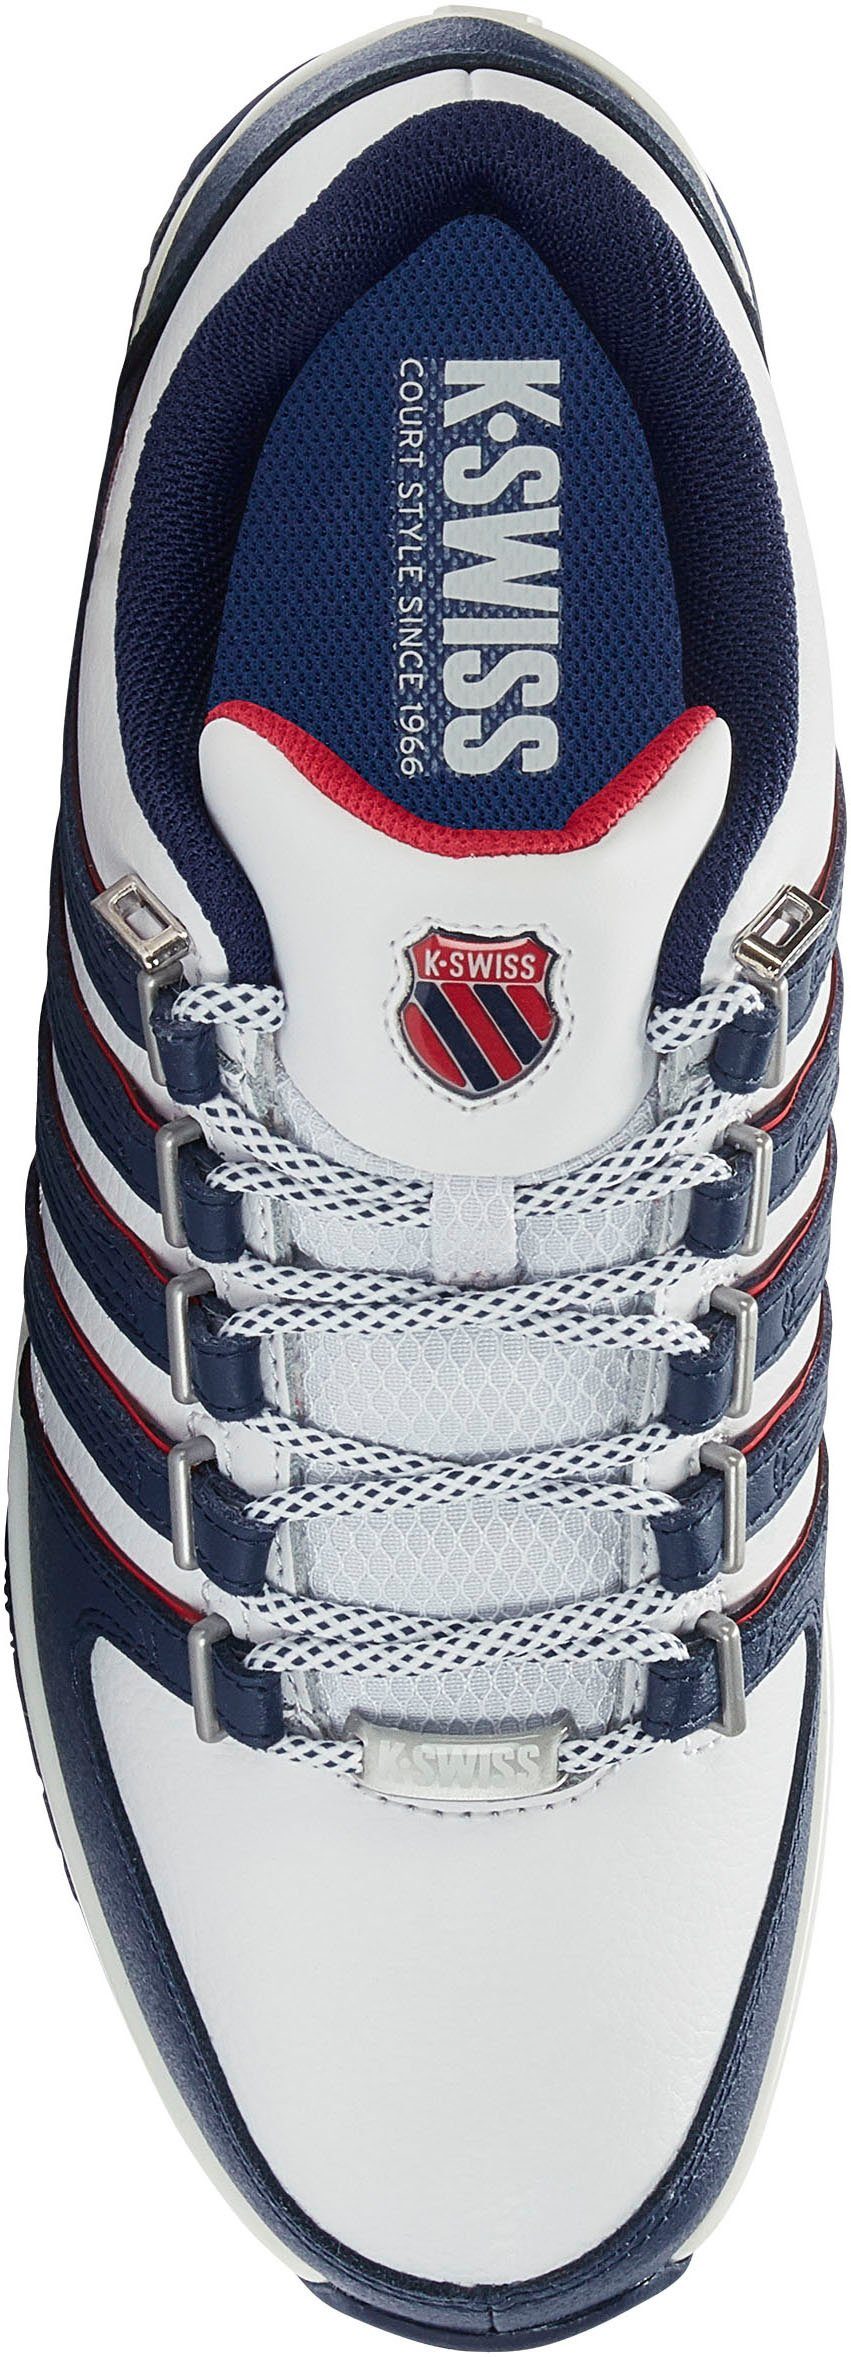 Rinzler weiß-blau-rot K-Swiss Sneaker